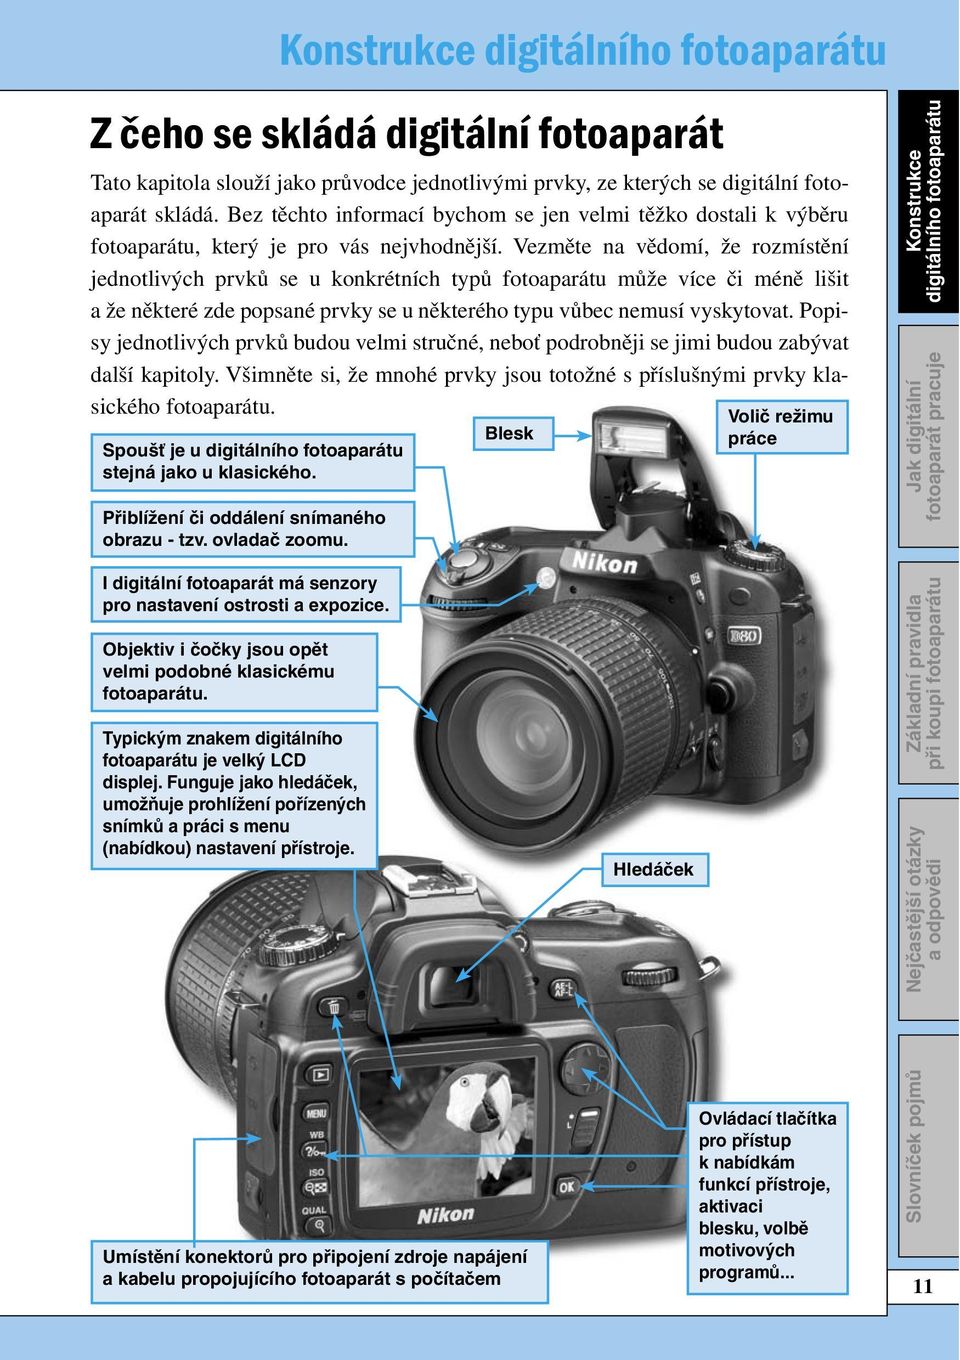 Vezměte na vědomí, že rozmístění jednotlivých prvků se u konkrétních typů fotoaparátu může více či méně lišit a že některé zde popsané prvky se u některého typu vůbec nemusí vyskytovat.